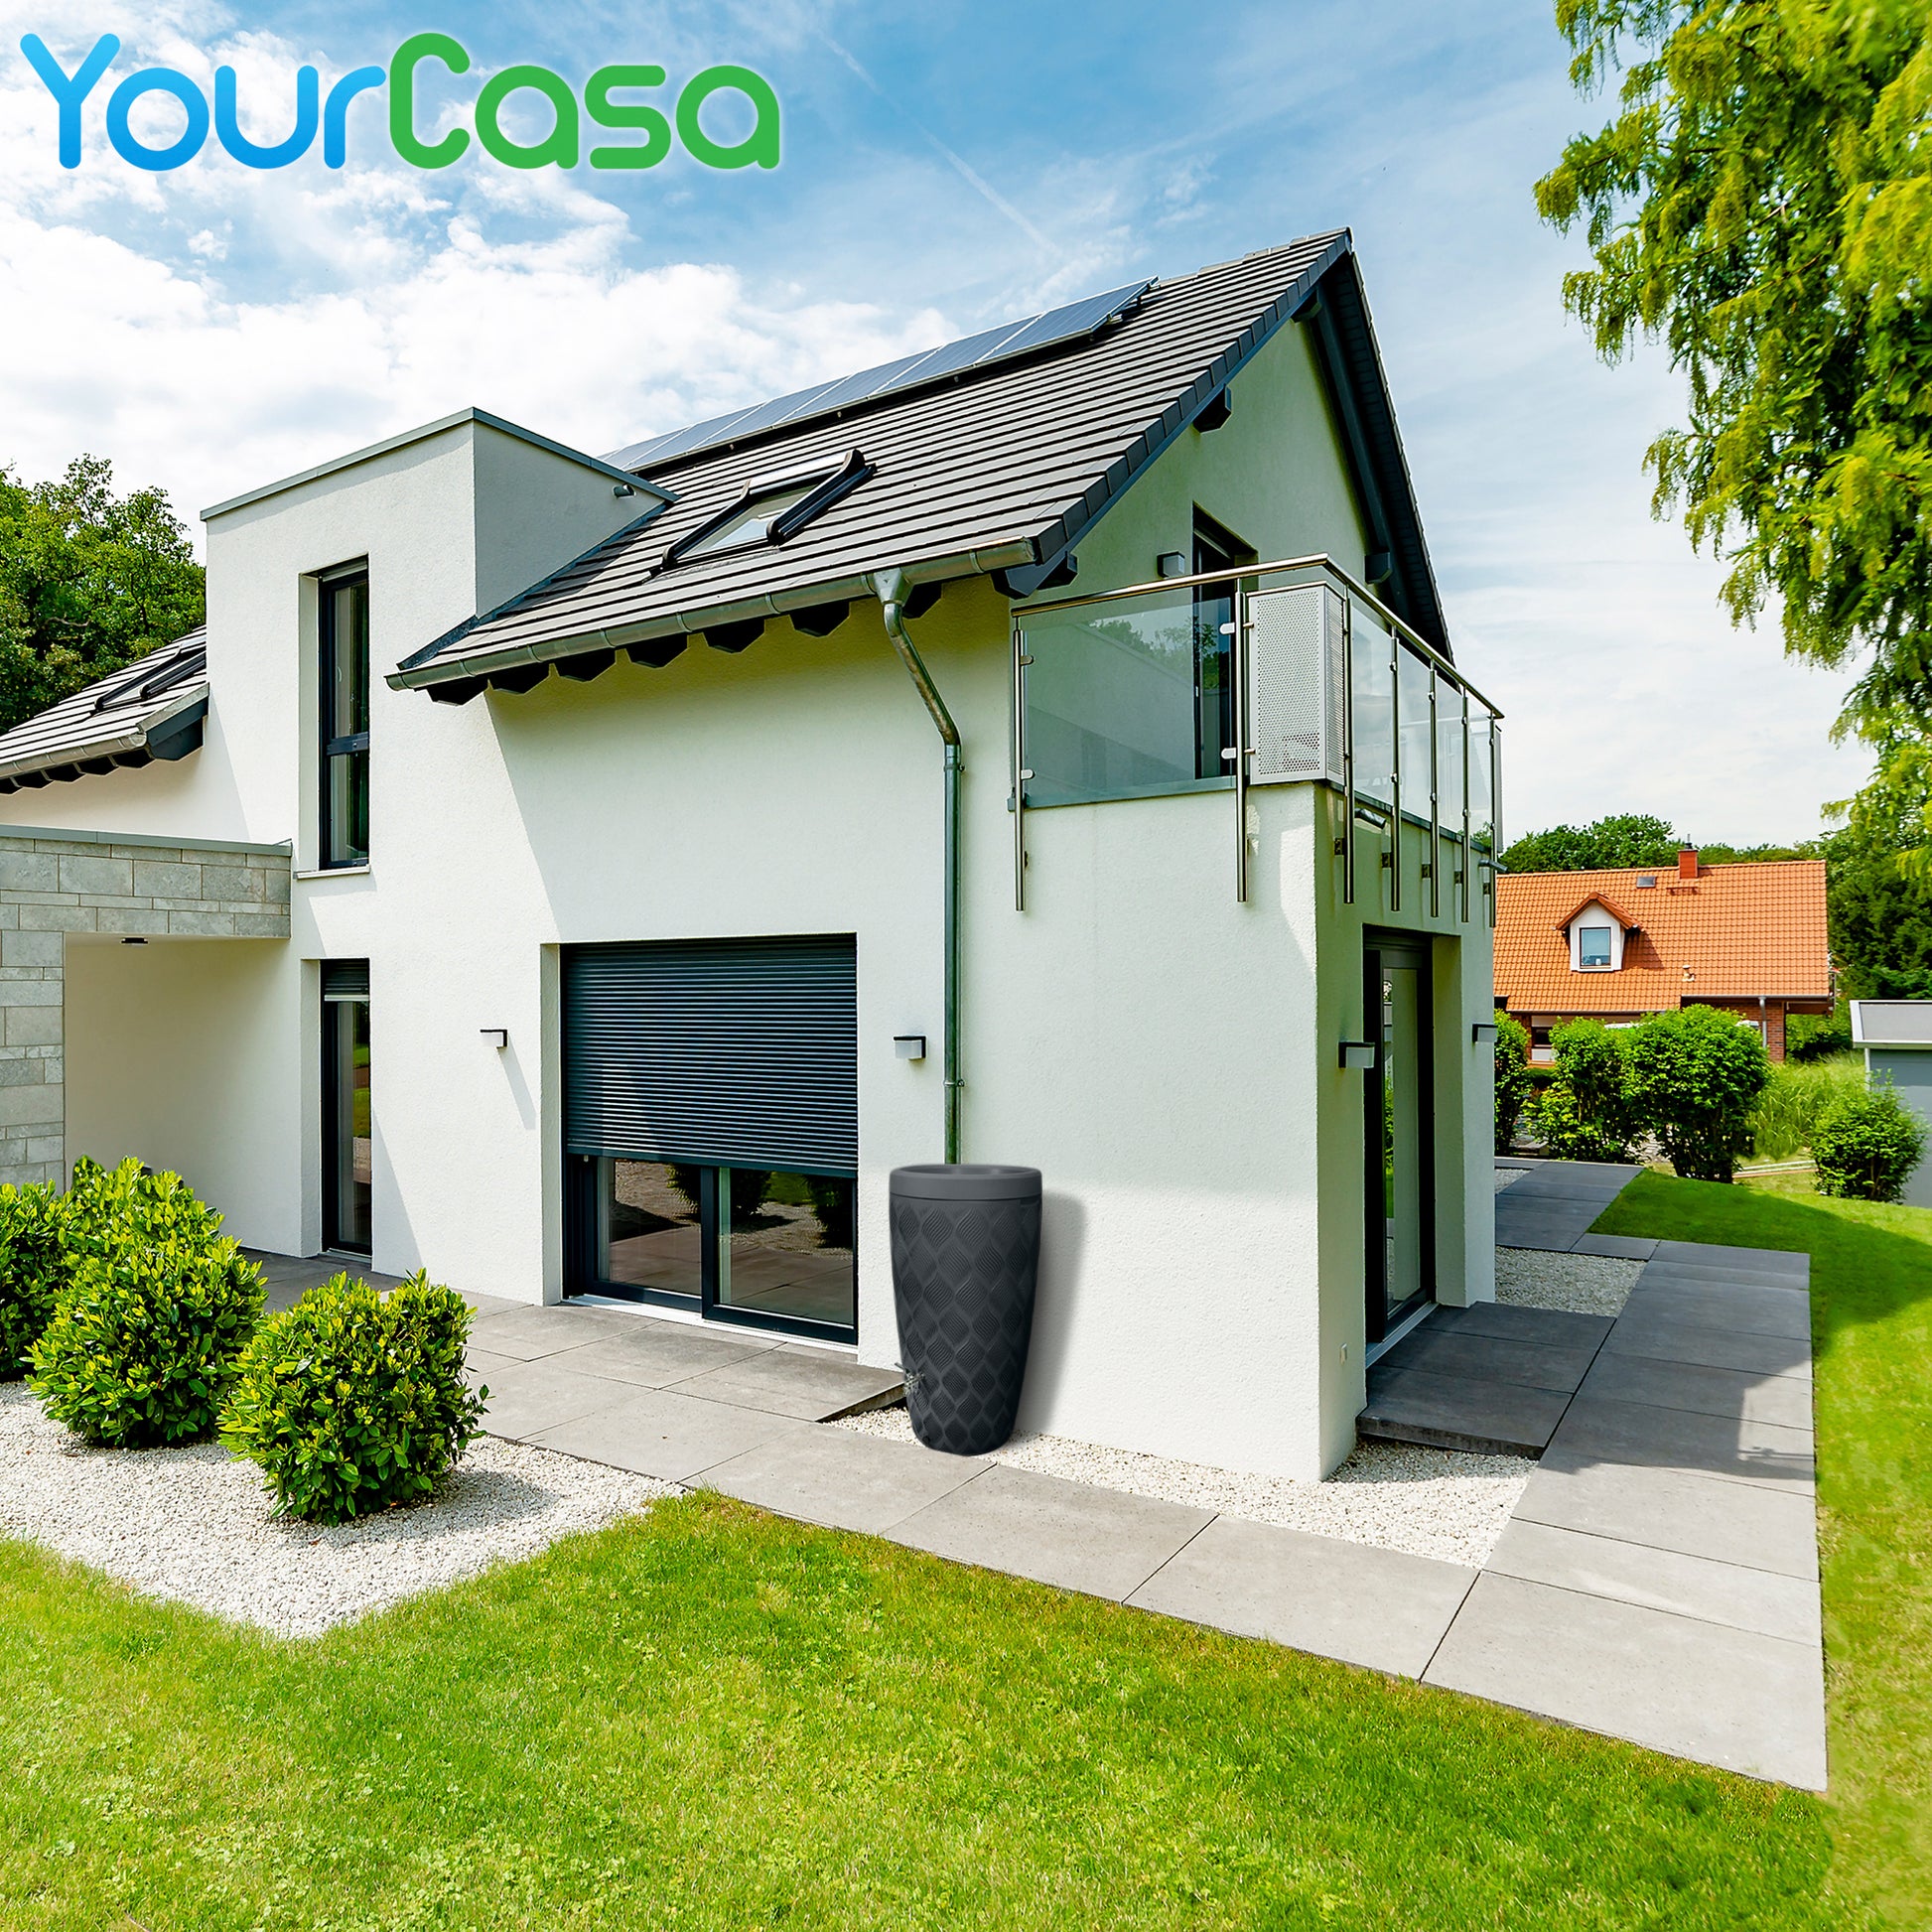 Ein Haus mit einem YourCasa Regentonne 240 Liter [Seabreeze Flower] Regenfass Frostsicher aus Kunststoff - Regenwassertonne-Solarpanel auf dem Dach.